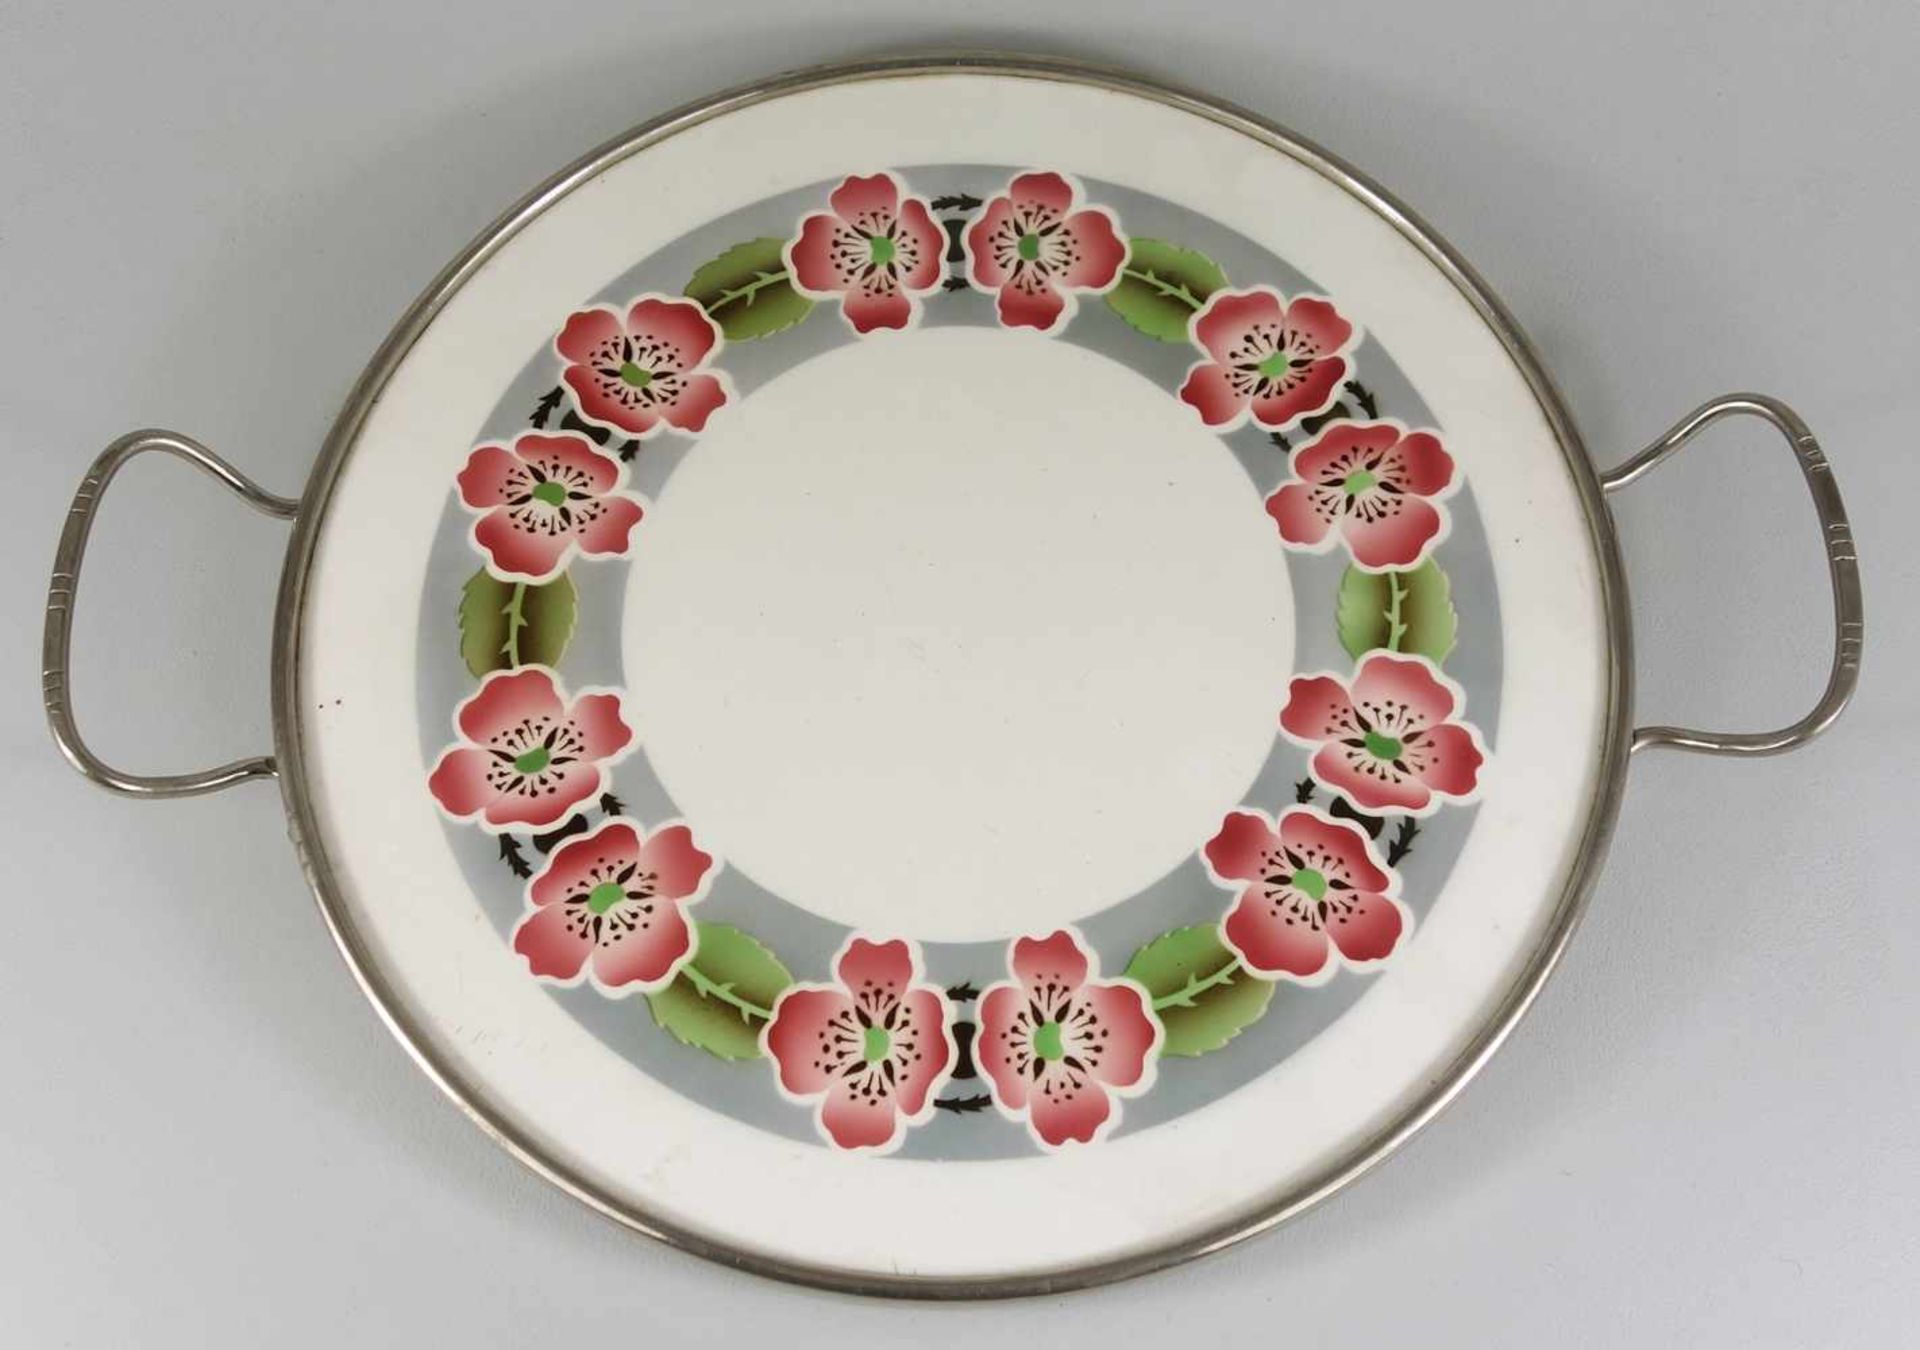 Tortenplatte mit roter Mohnblütenranke, um 1920, Keramikplatte mit Spritzdekor, Metallfassung mit